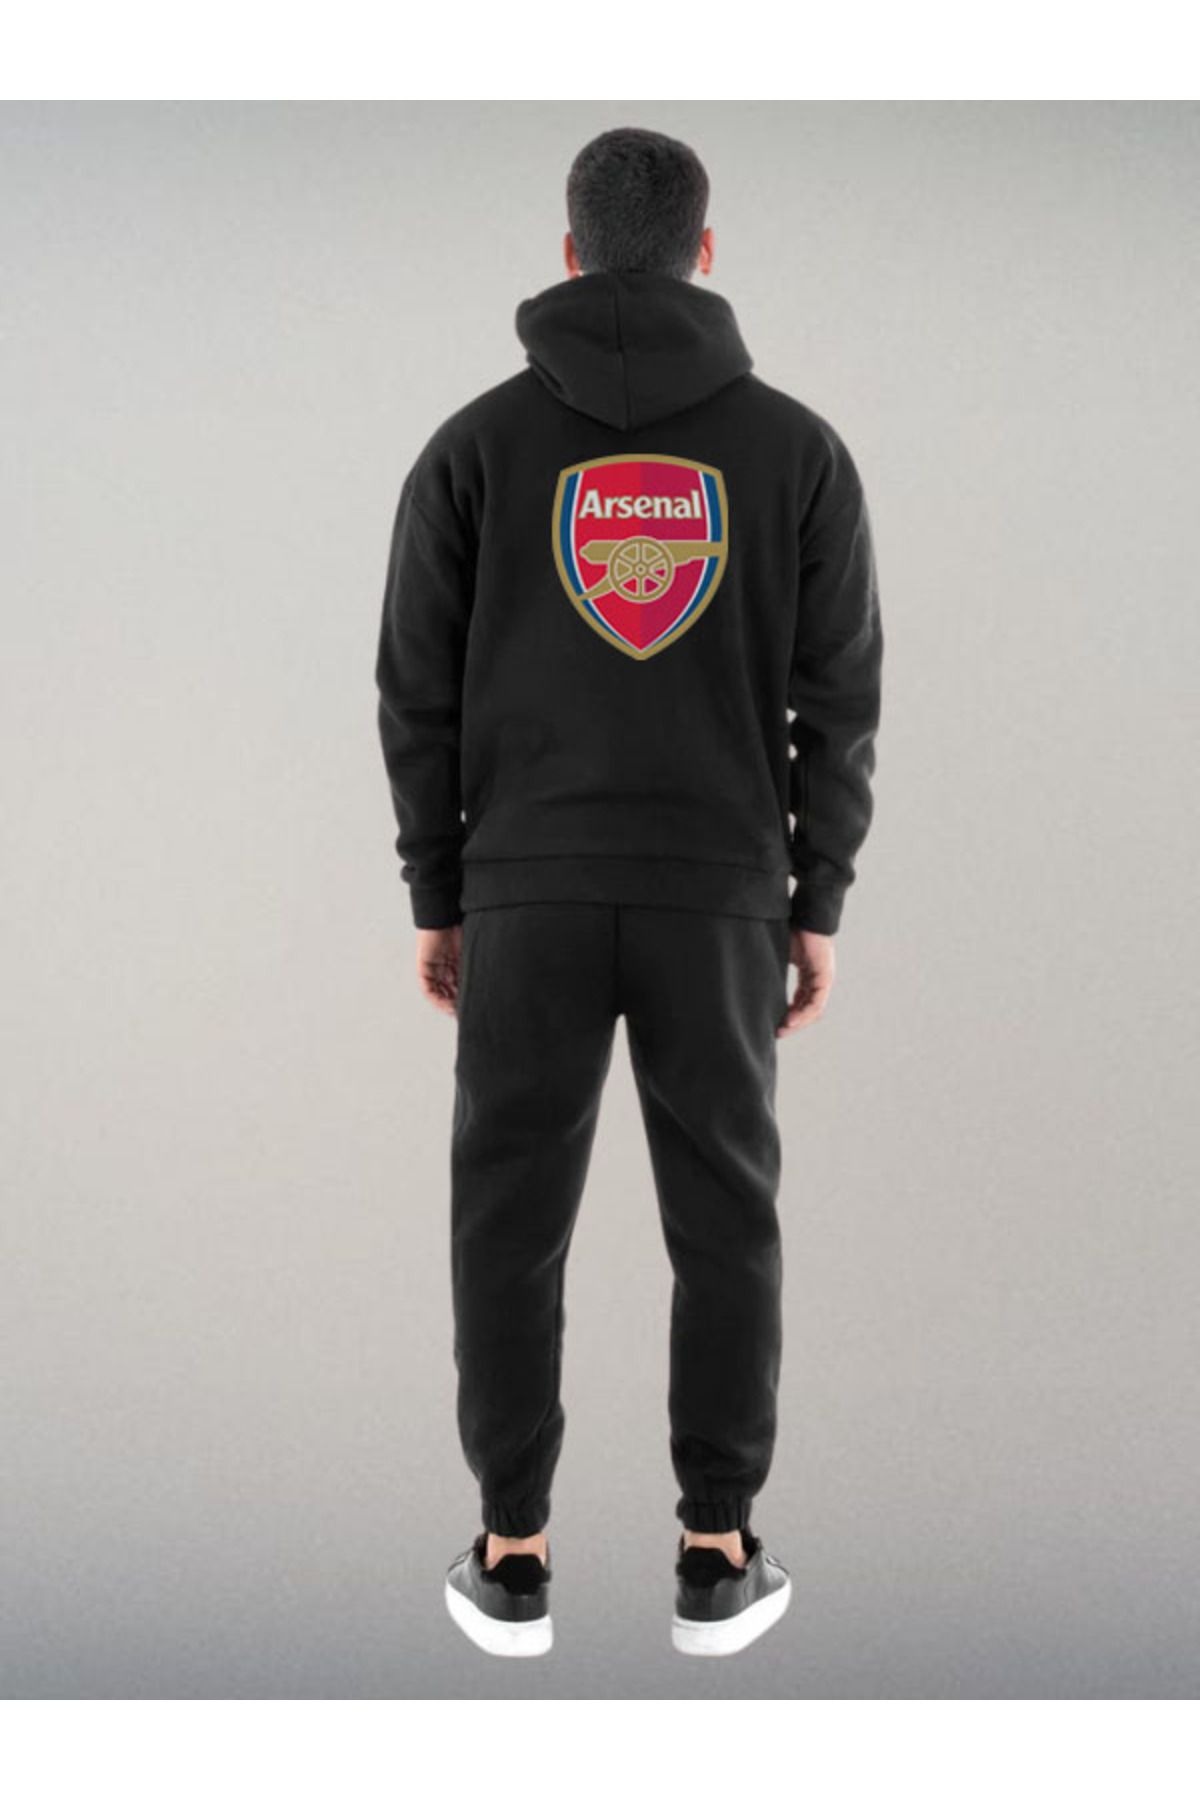 Darkia Arsenal Futbol Takımı Özel Tasarım Baskılı Kapşonlu Sweatshirt Hoodie Spor Eşofman Takımı